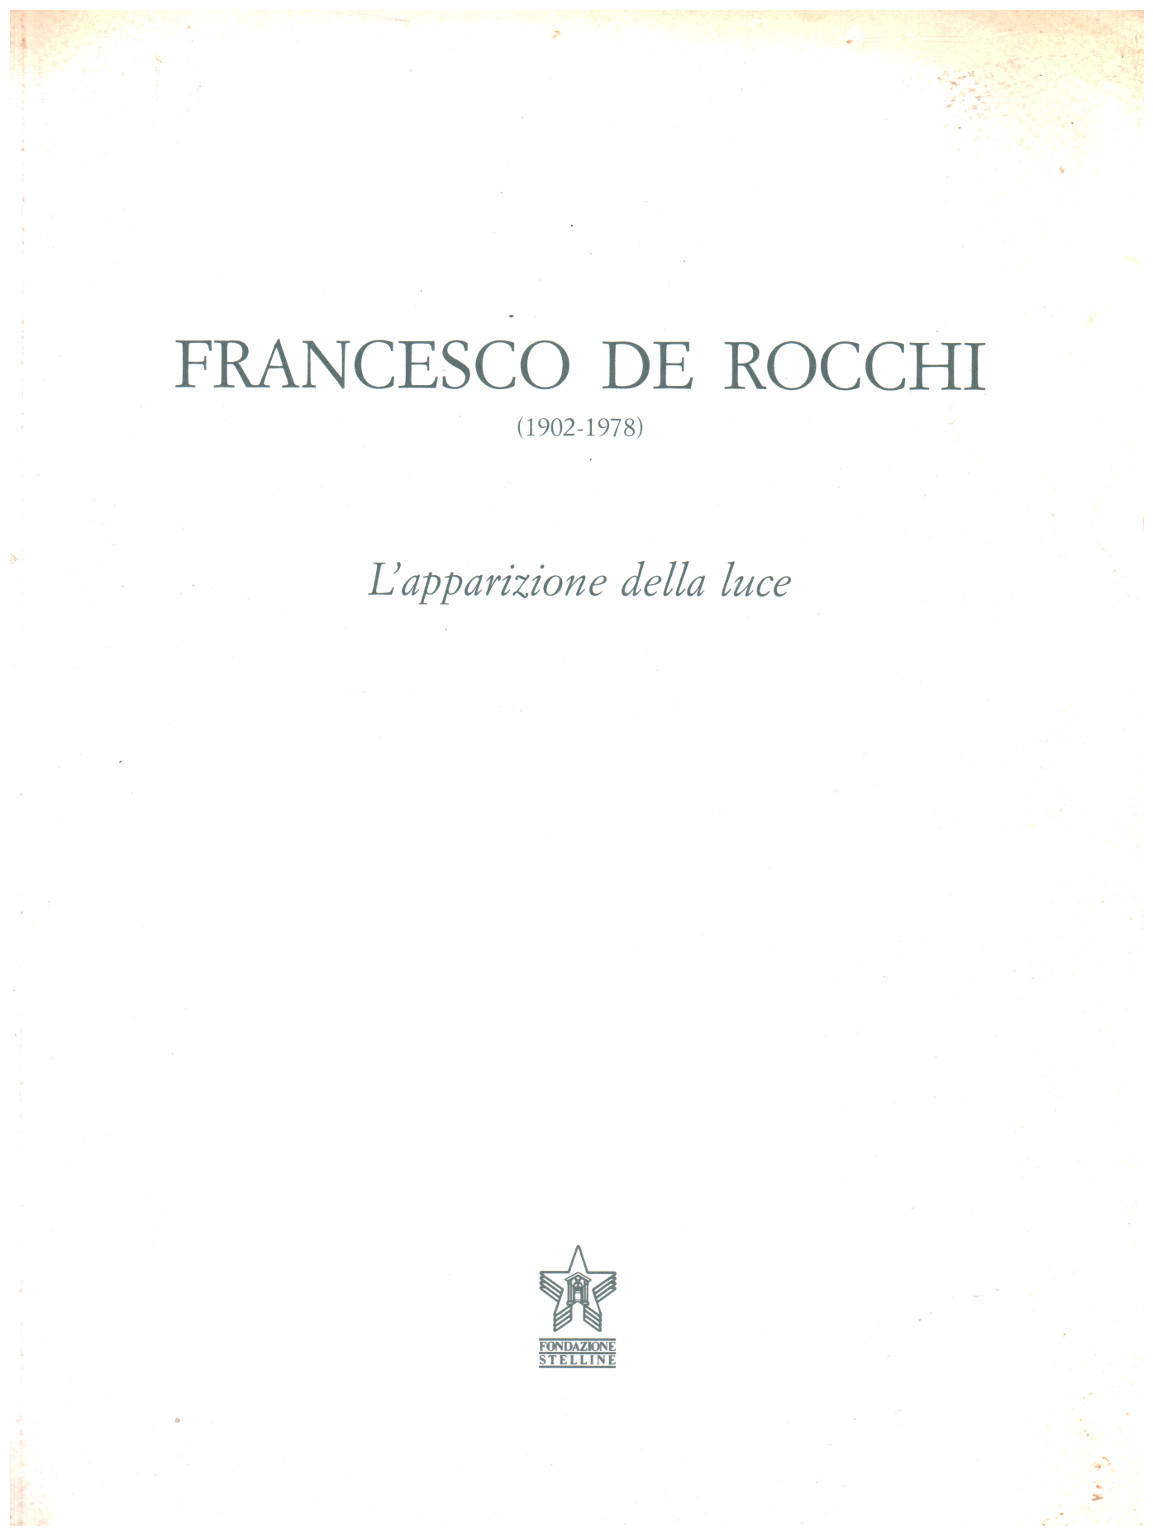 Francesco De Rocchi (1902-1978). The apparition of the, s.a.